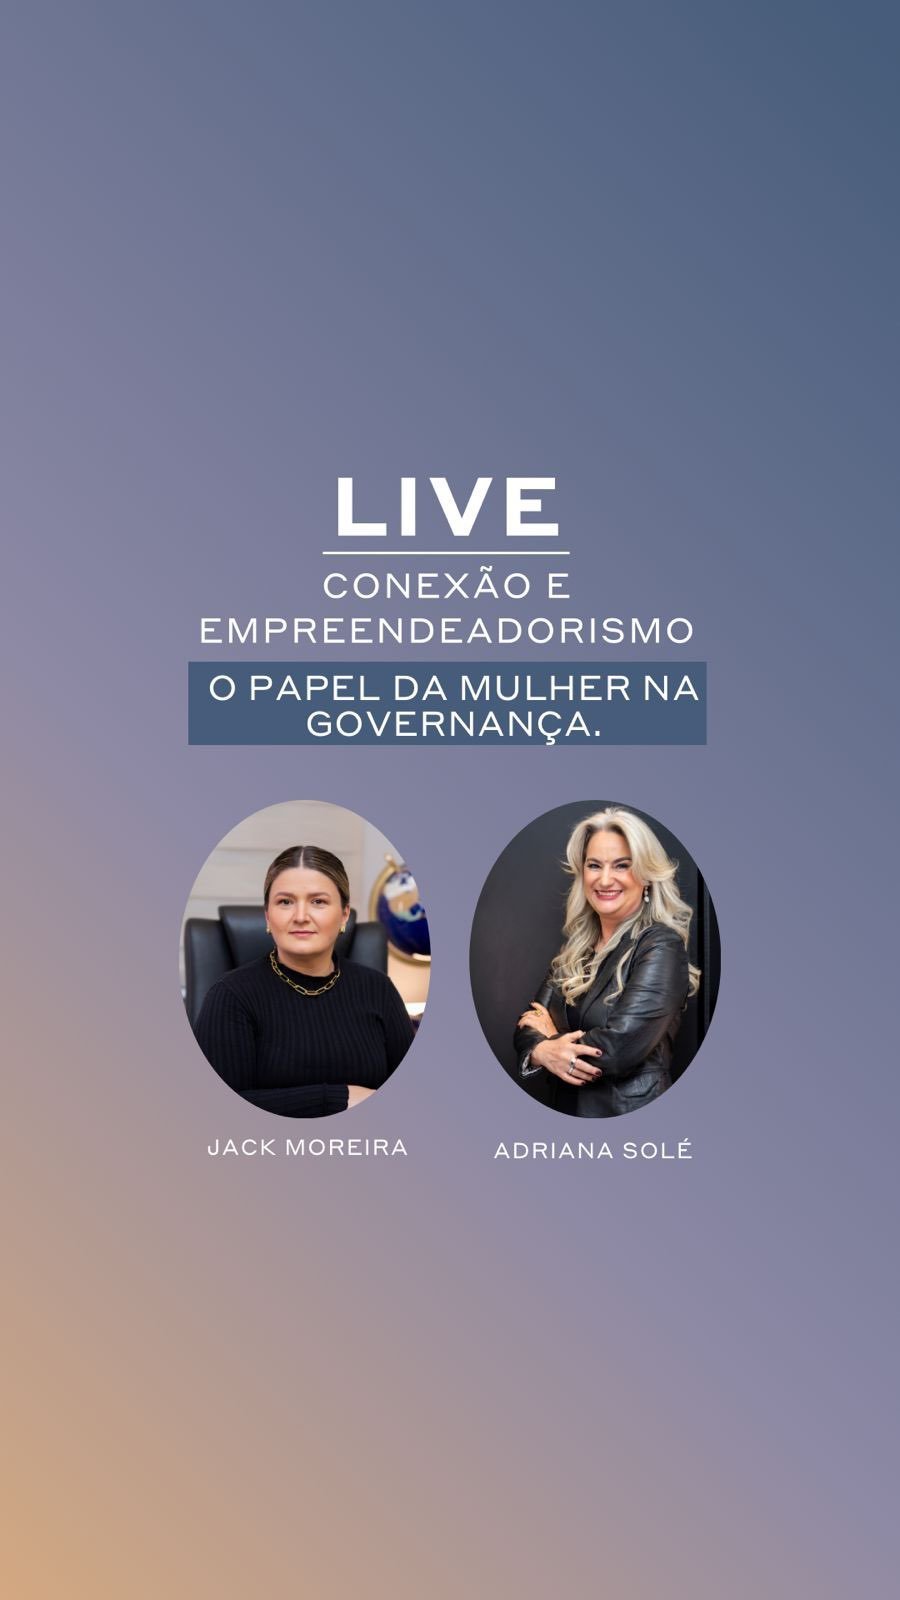 Live Conexão e Empreendedorismo da @eujack.moreira: o papel da mulher na governança